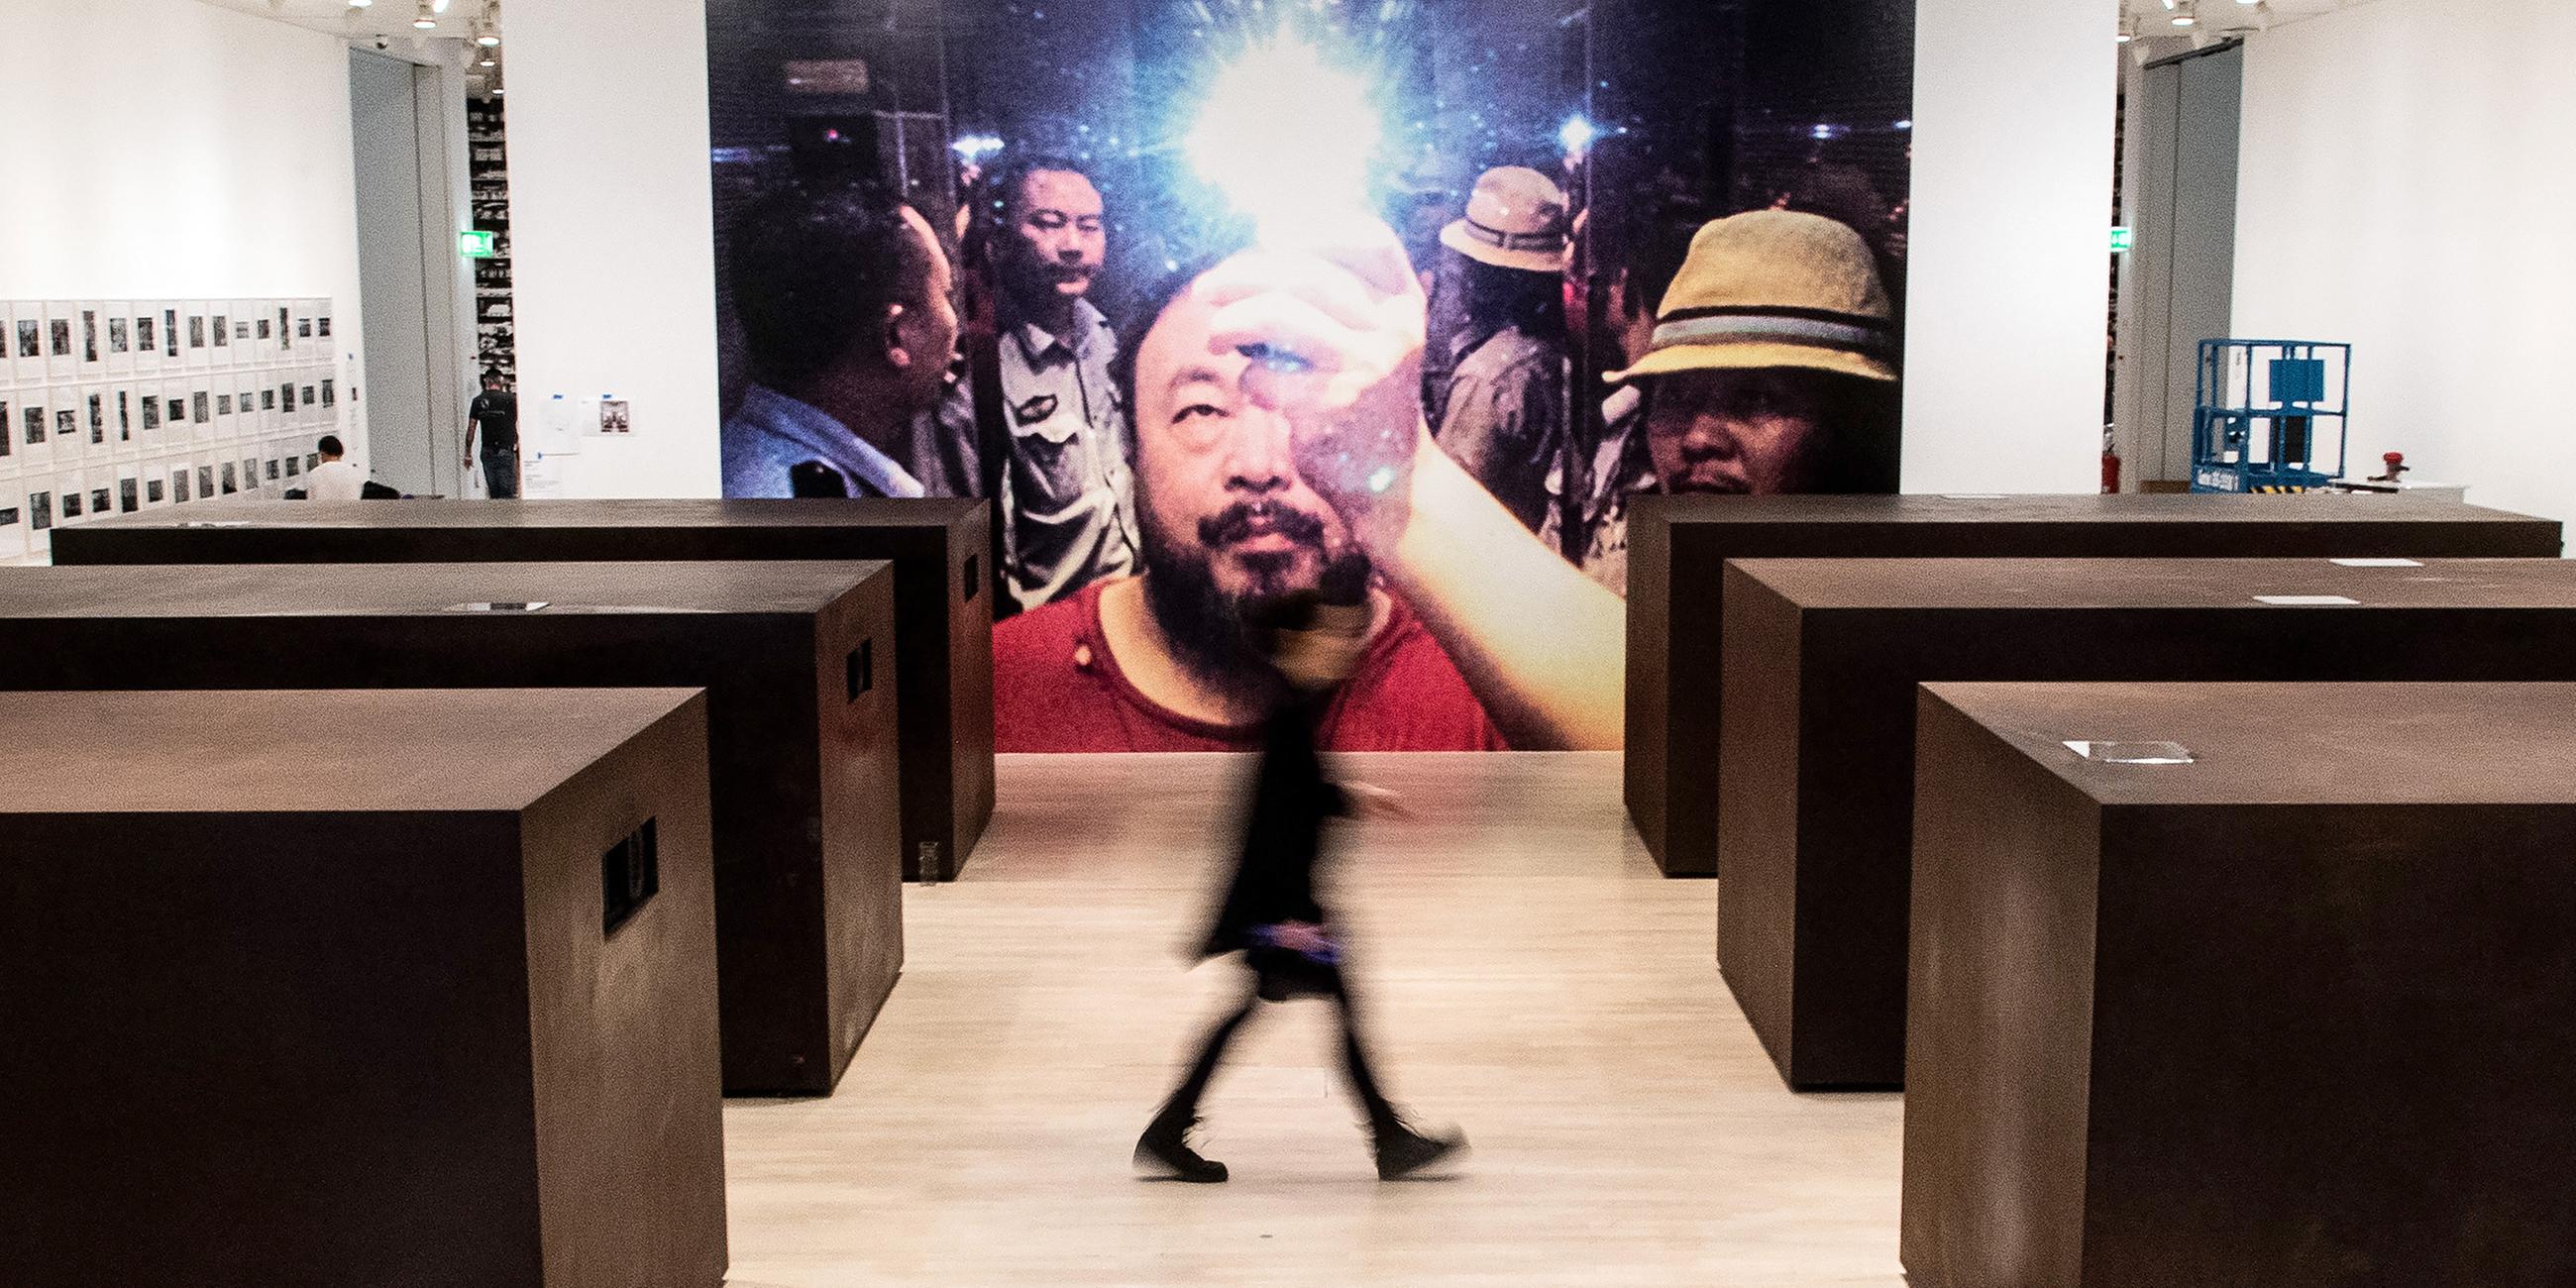 Objekt "s.a.c.r.e.d." des Künstlers Ai Weiwei in der Ausstellung in der Kunstsammlung Nordrhein-Westfalen in Düsseldorf